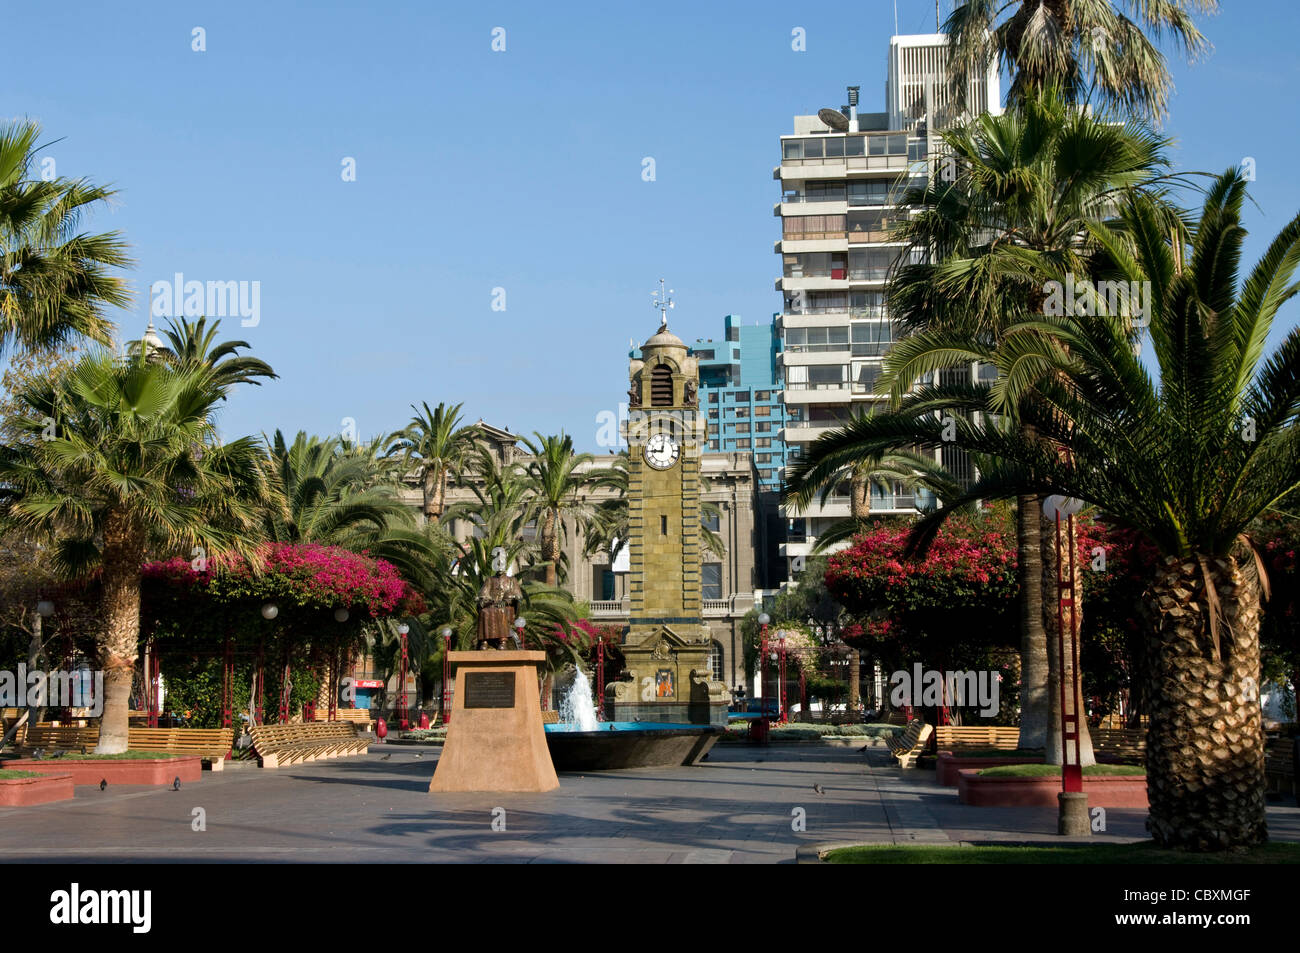 Le Chili. La ville d'Antofagasta. Place Colon et tour de l'horloge. Banque D'Images